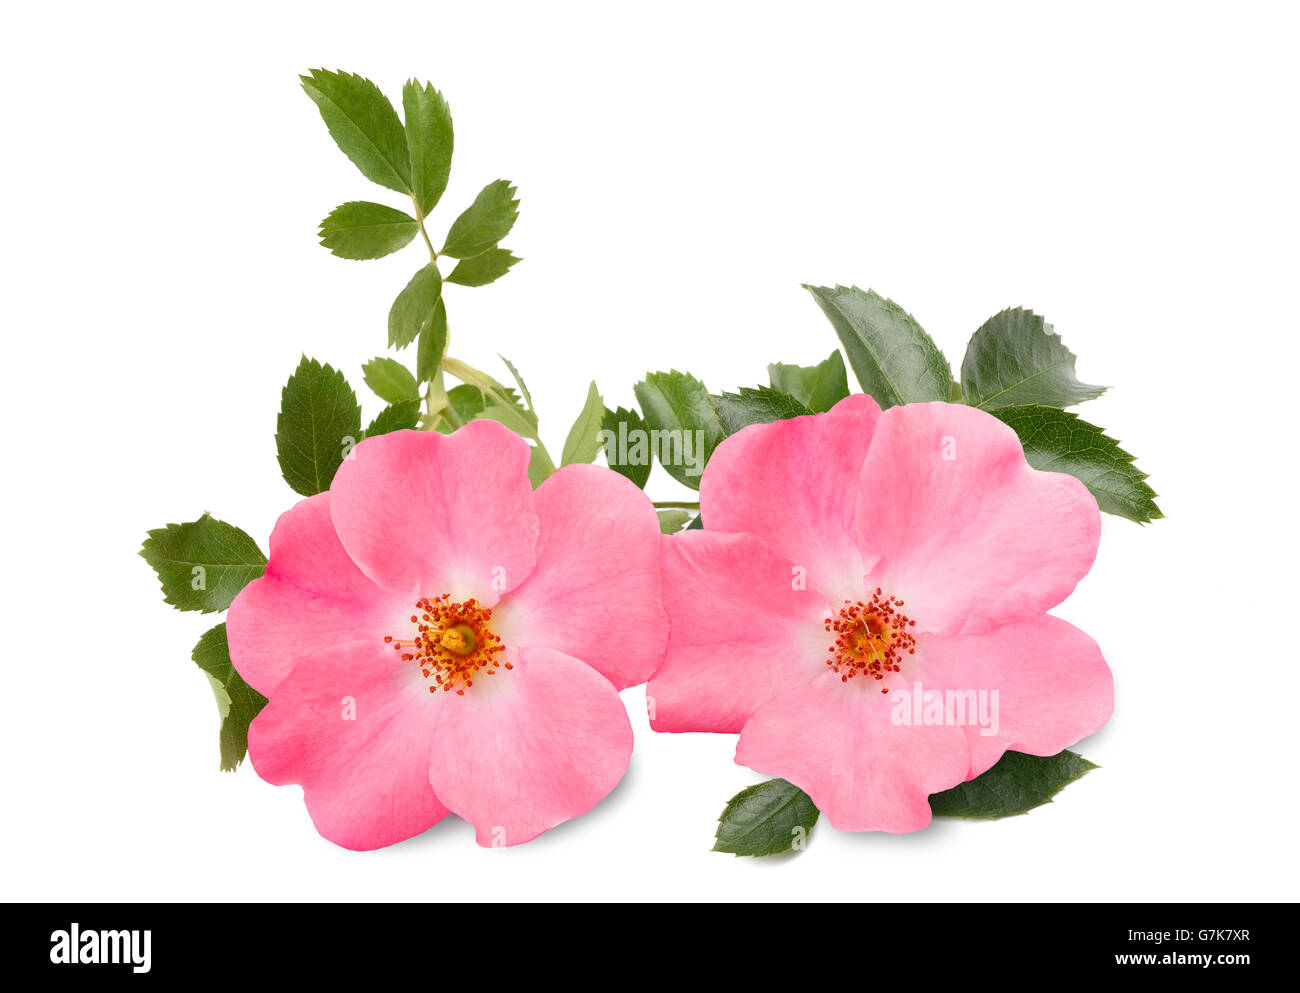 Dog rose ( rosa canina ) isolated on white background Stock Photo